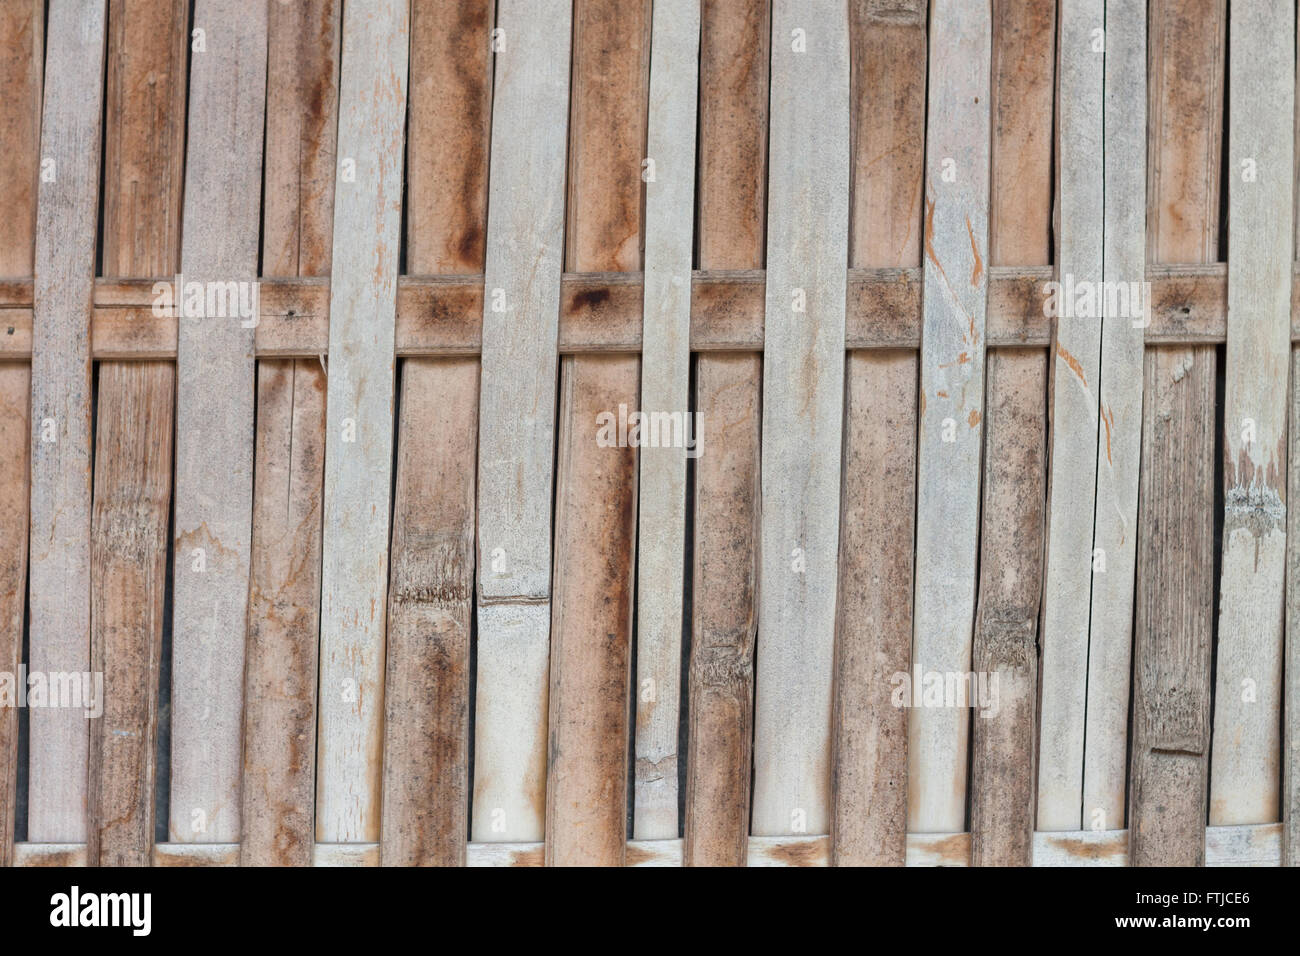 Close up bamboo fence background, stock photo Stock Photo